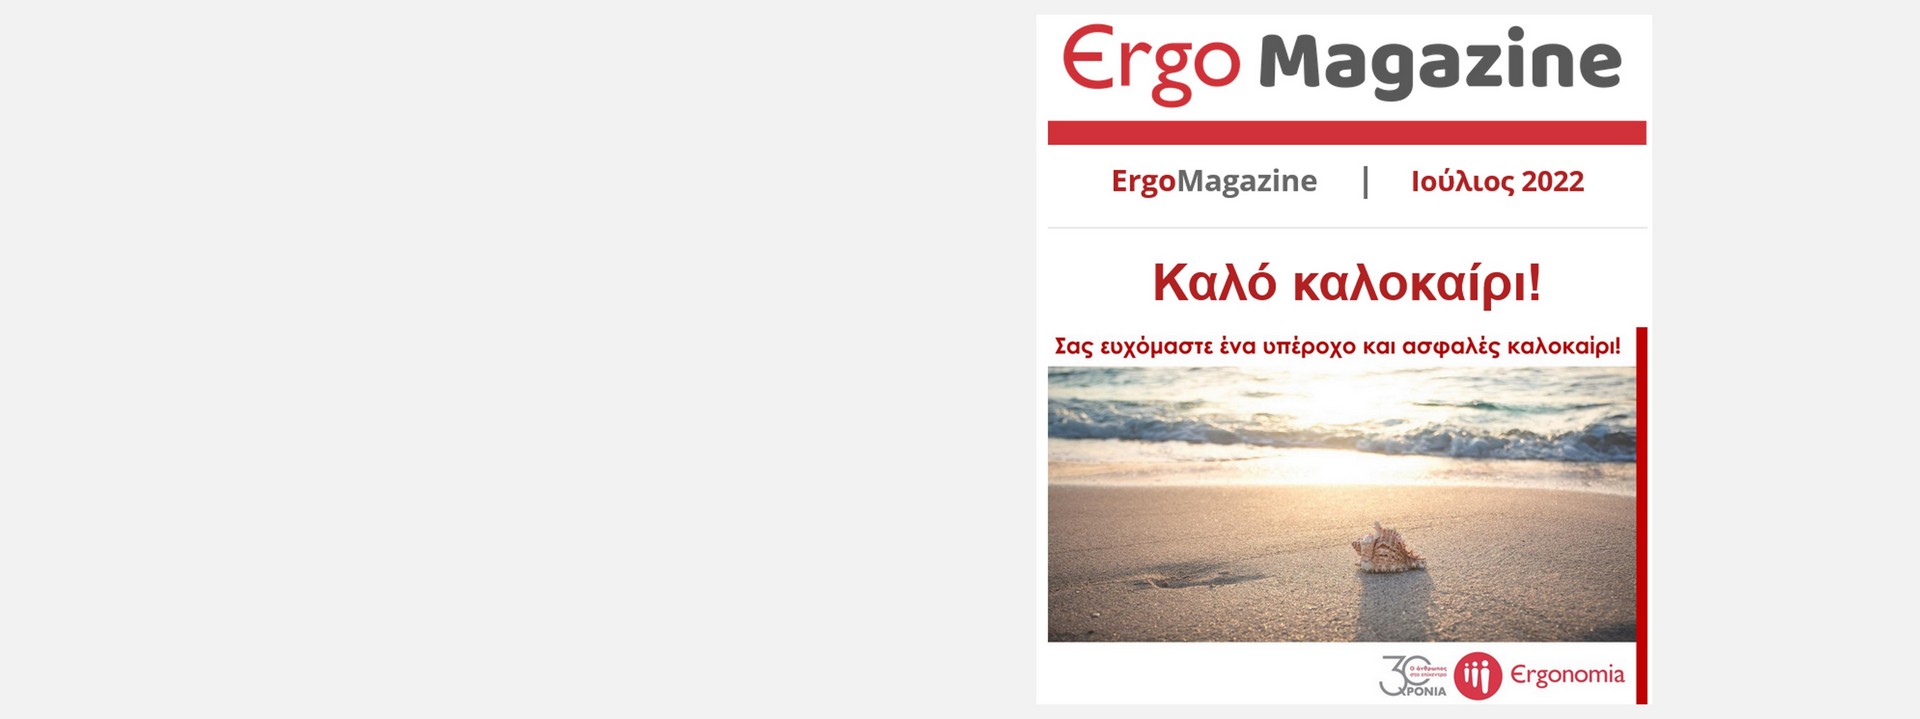 ErgoMagazine July 22